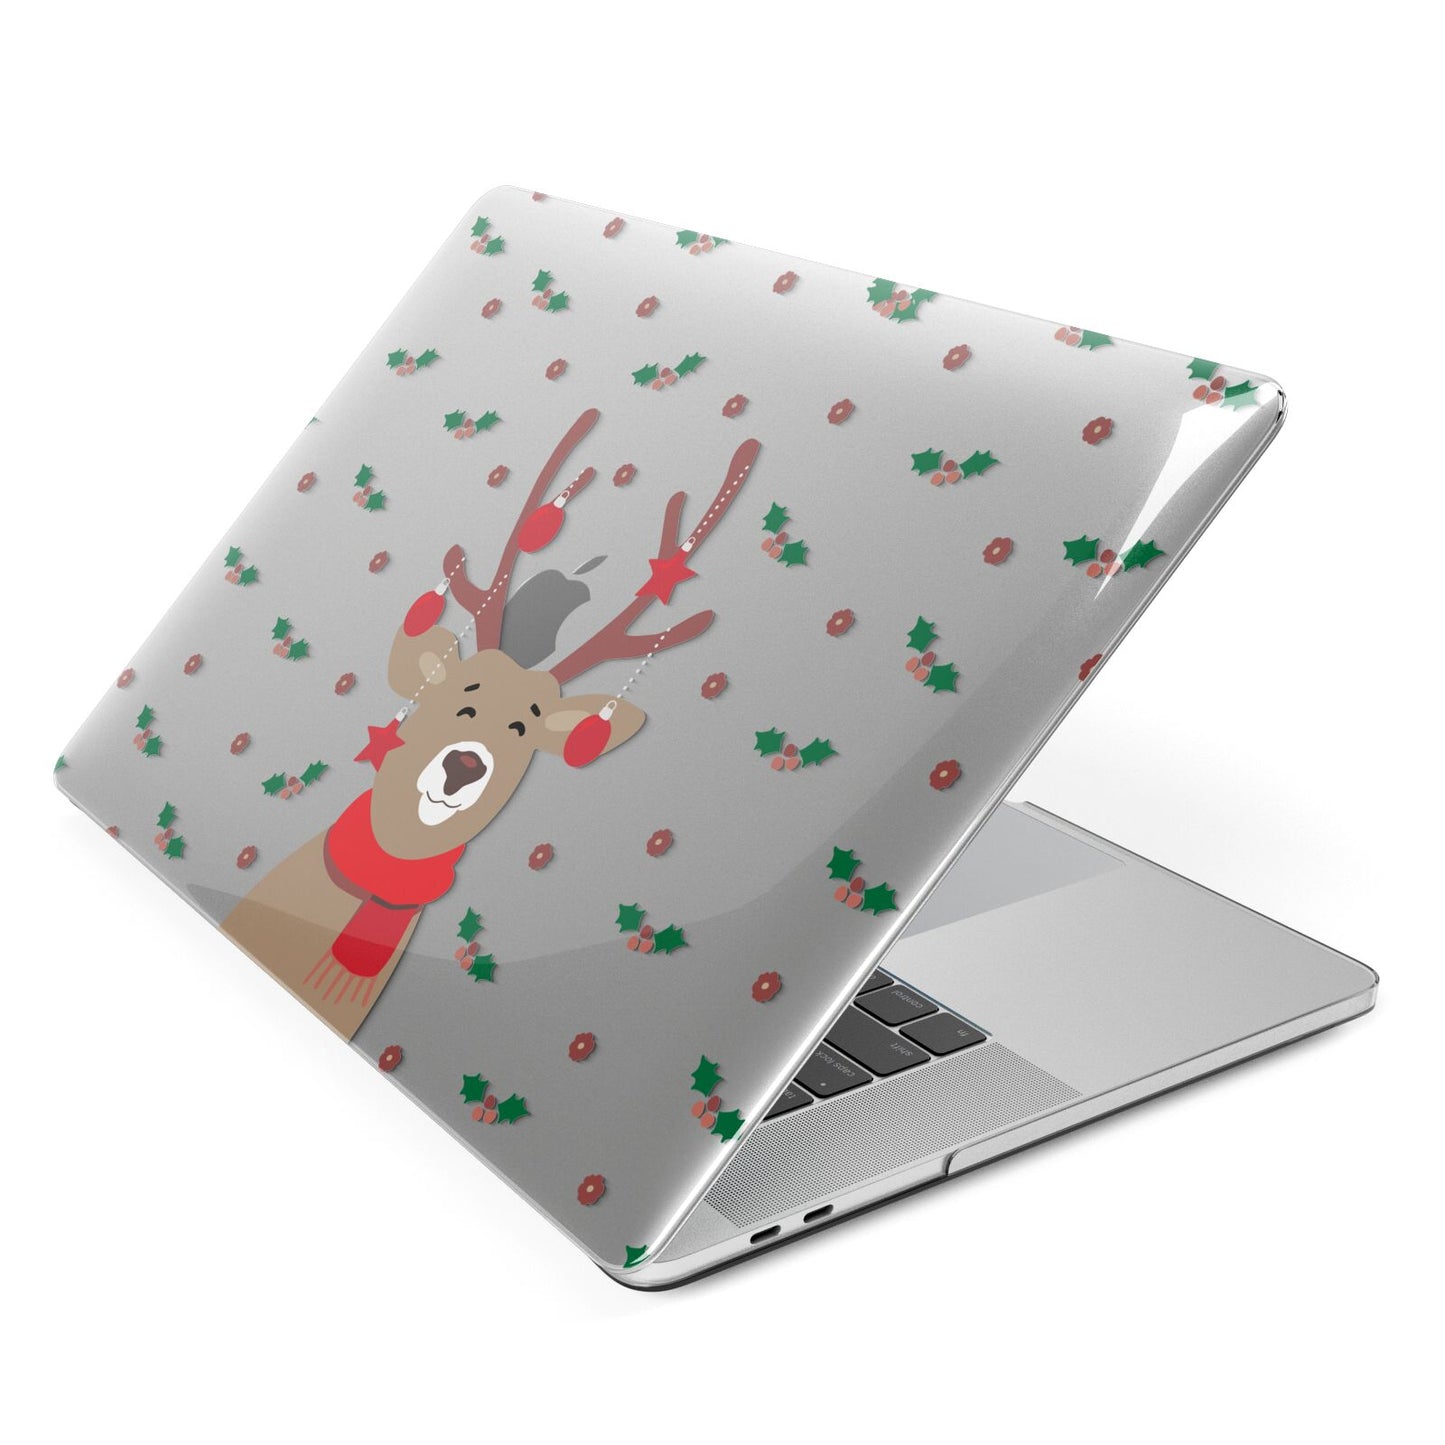 Reindeer Christmas Apple MacBook Case Side View